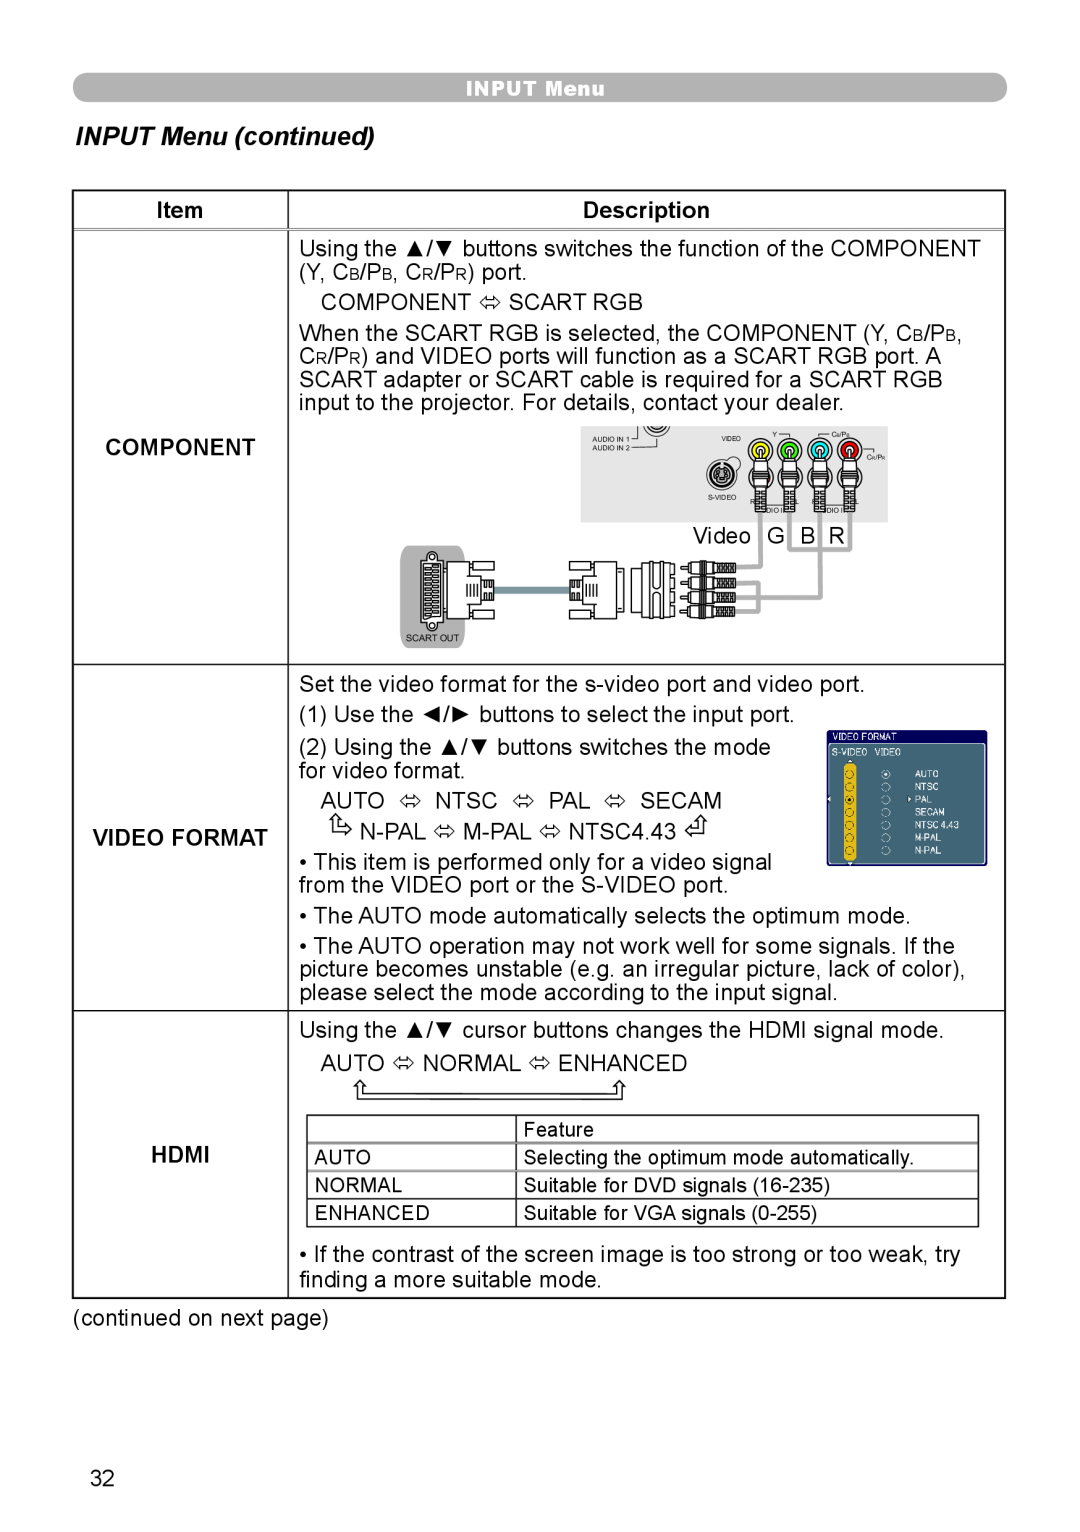 Planar PR9020 user manual INPUT Menu continued, Description, Component, Video Format, Hdmi 